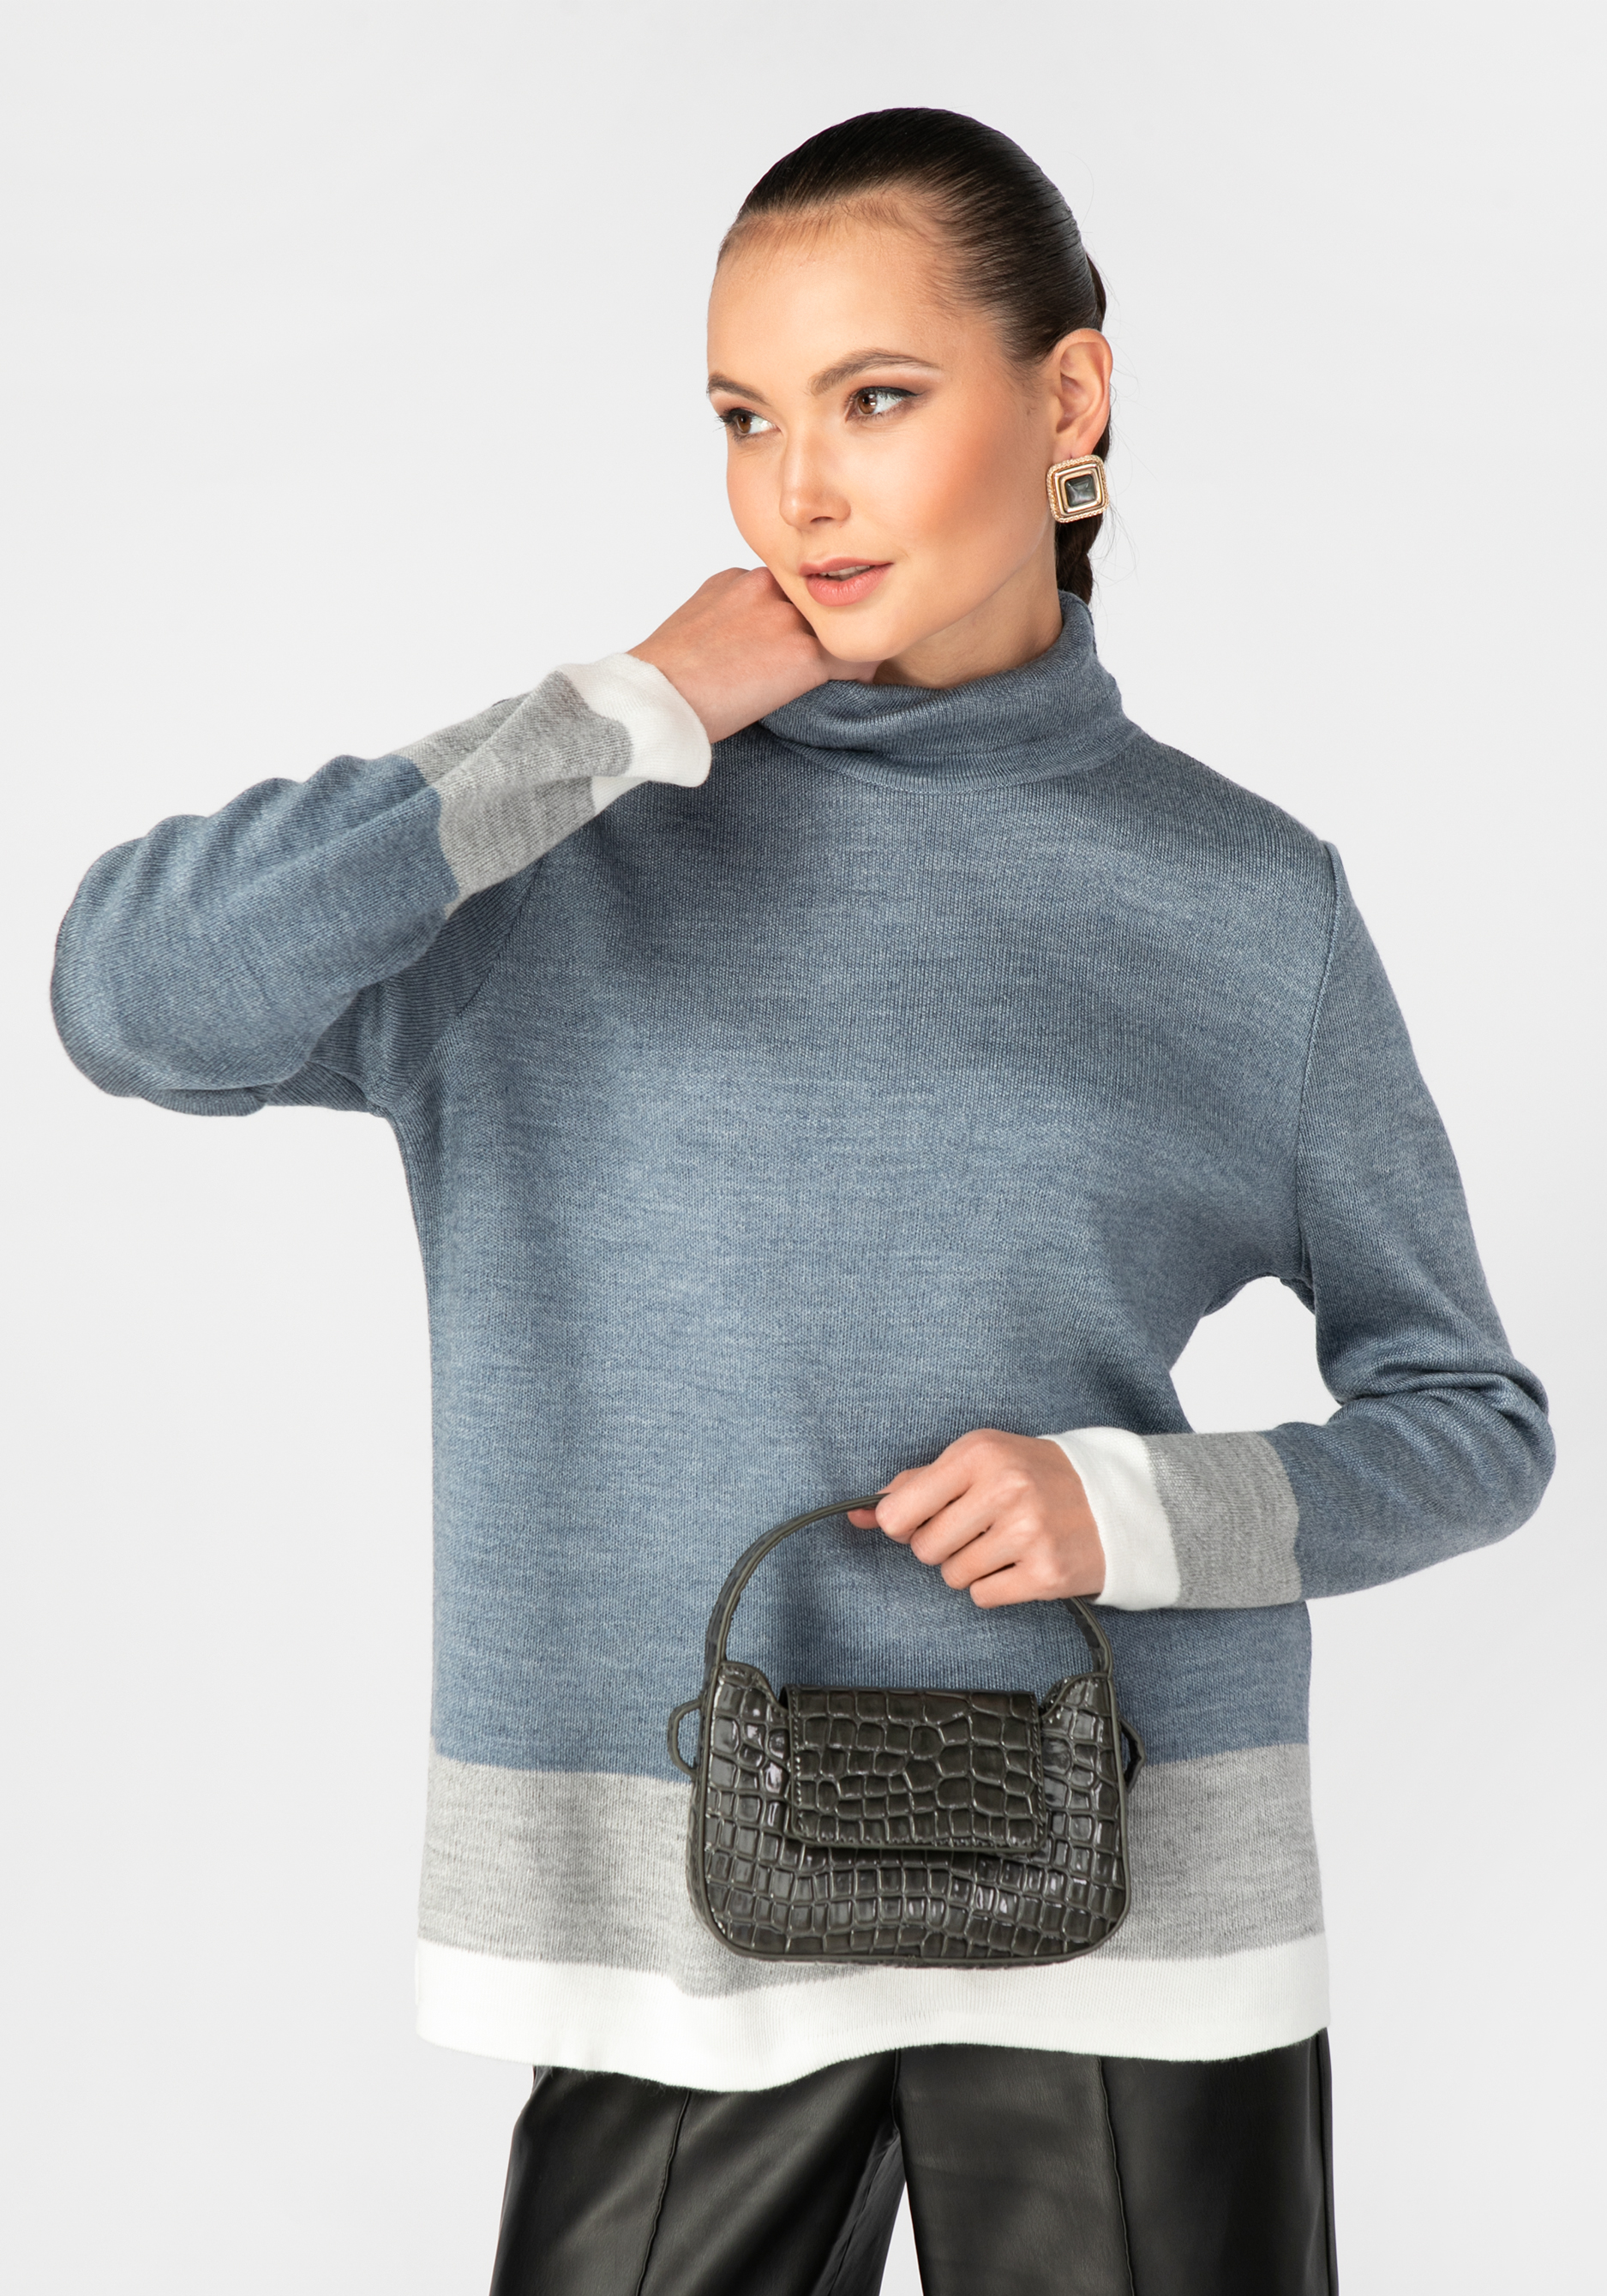 Свитер женский с контрастными полосами triol свитер косички xxl